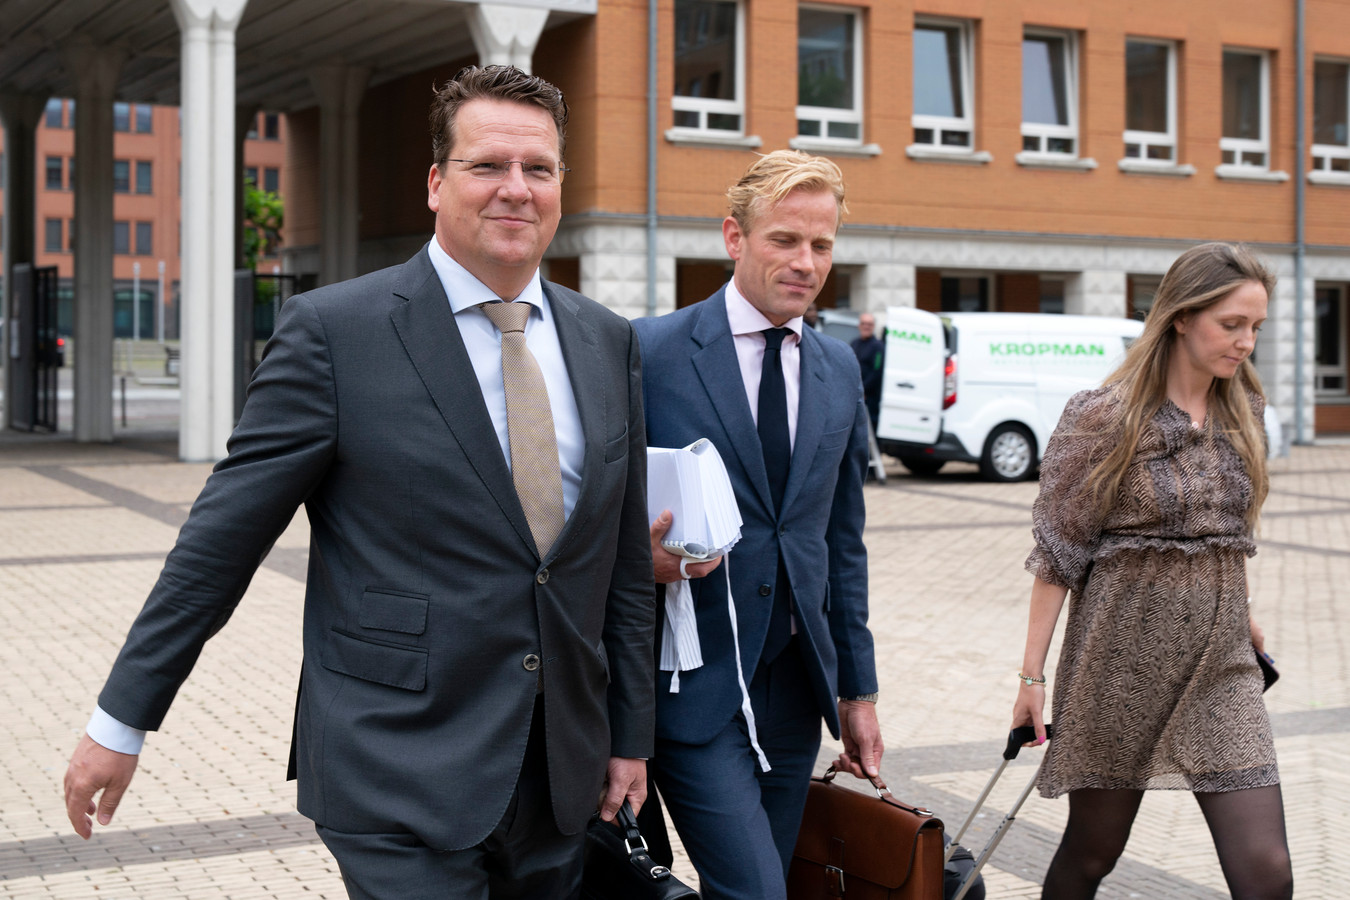 Koen Slippens, topman van Sligro in Veghel, arriveert samen met zijn advocaat Jan Willem De Groot bij de rechtbank om te getuigen in de EMTE-zaak die plaatsgenoot Jumbo heeft aangespannen.